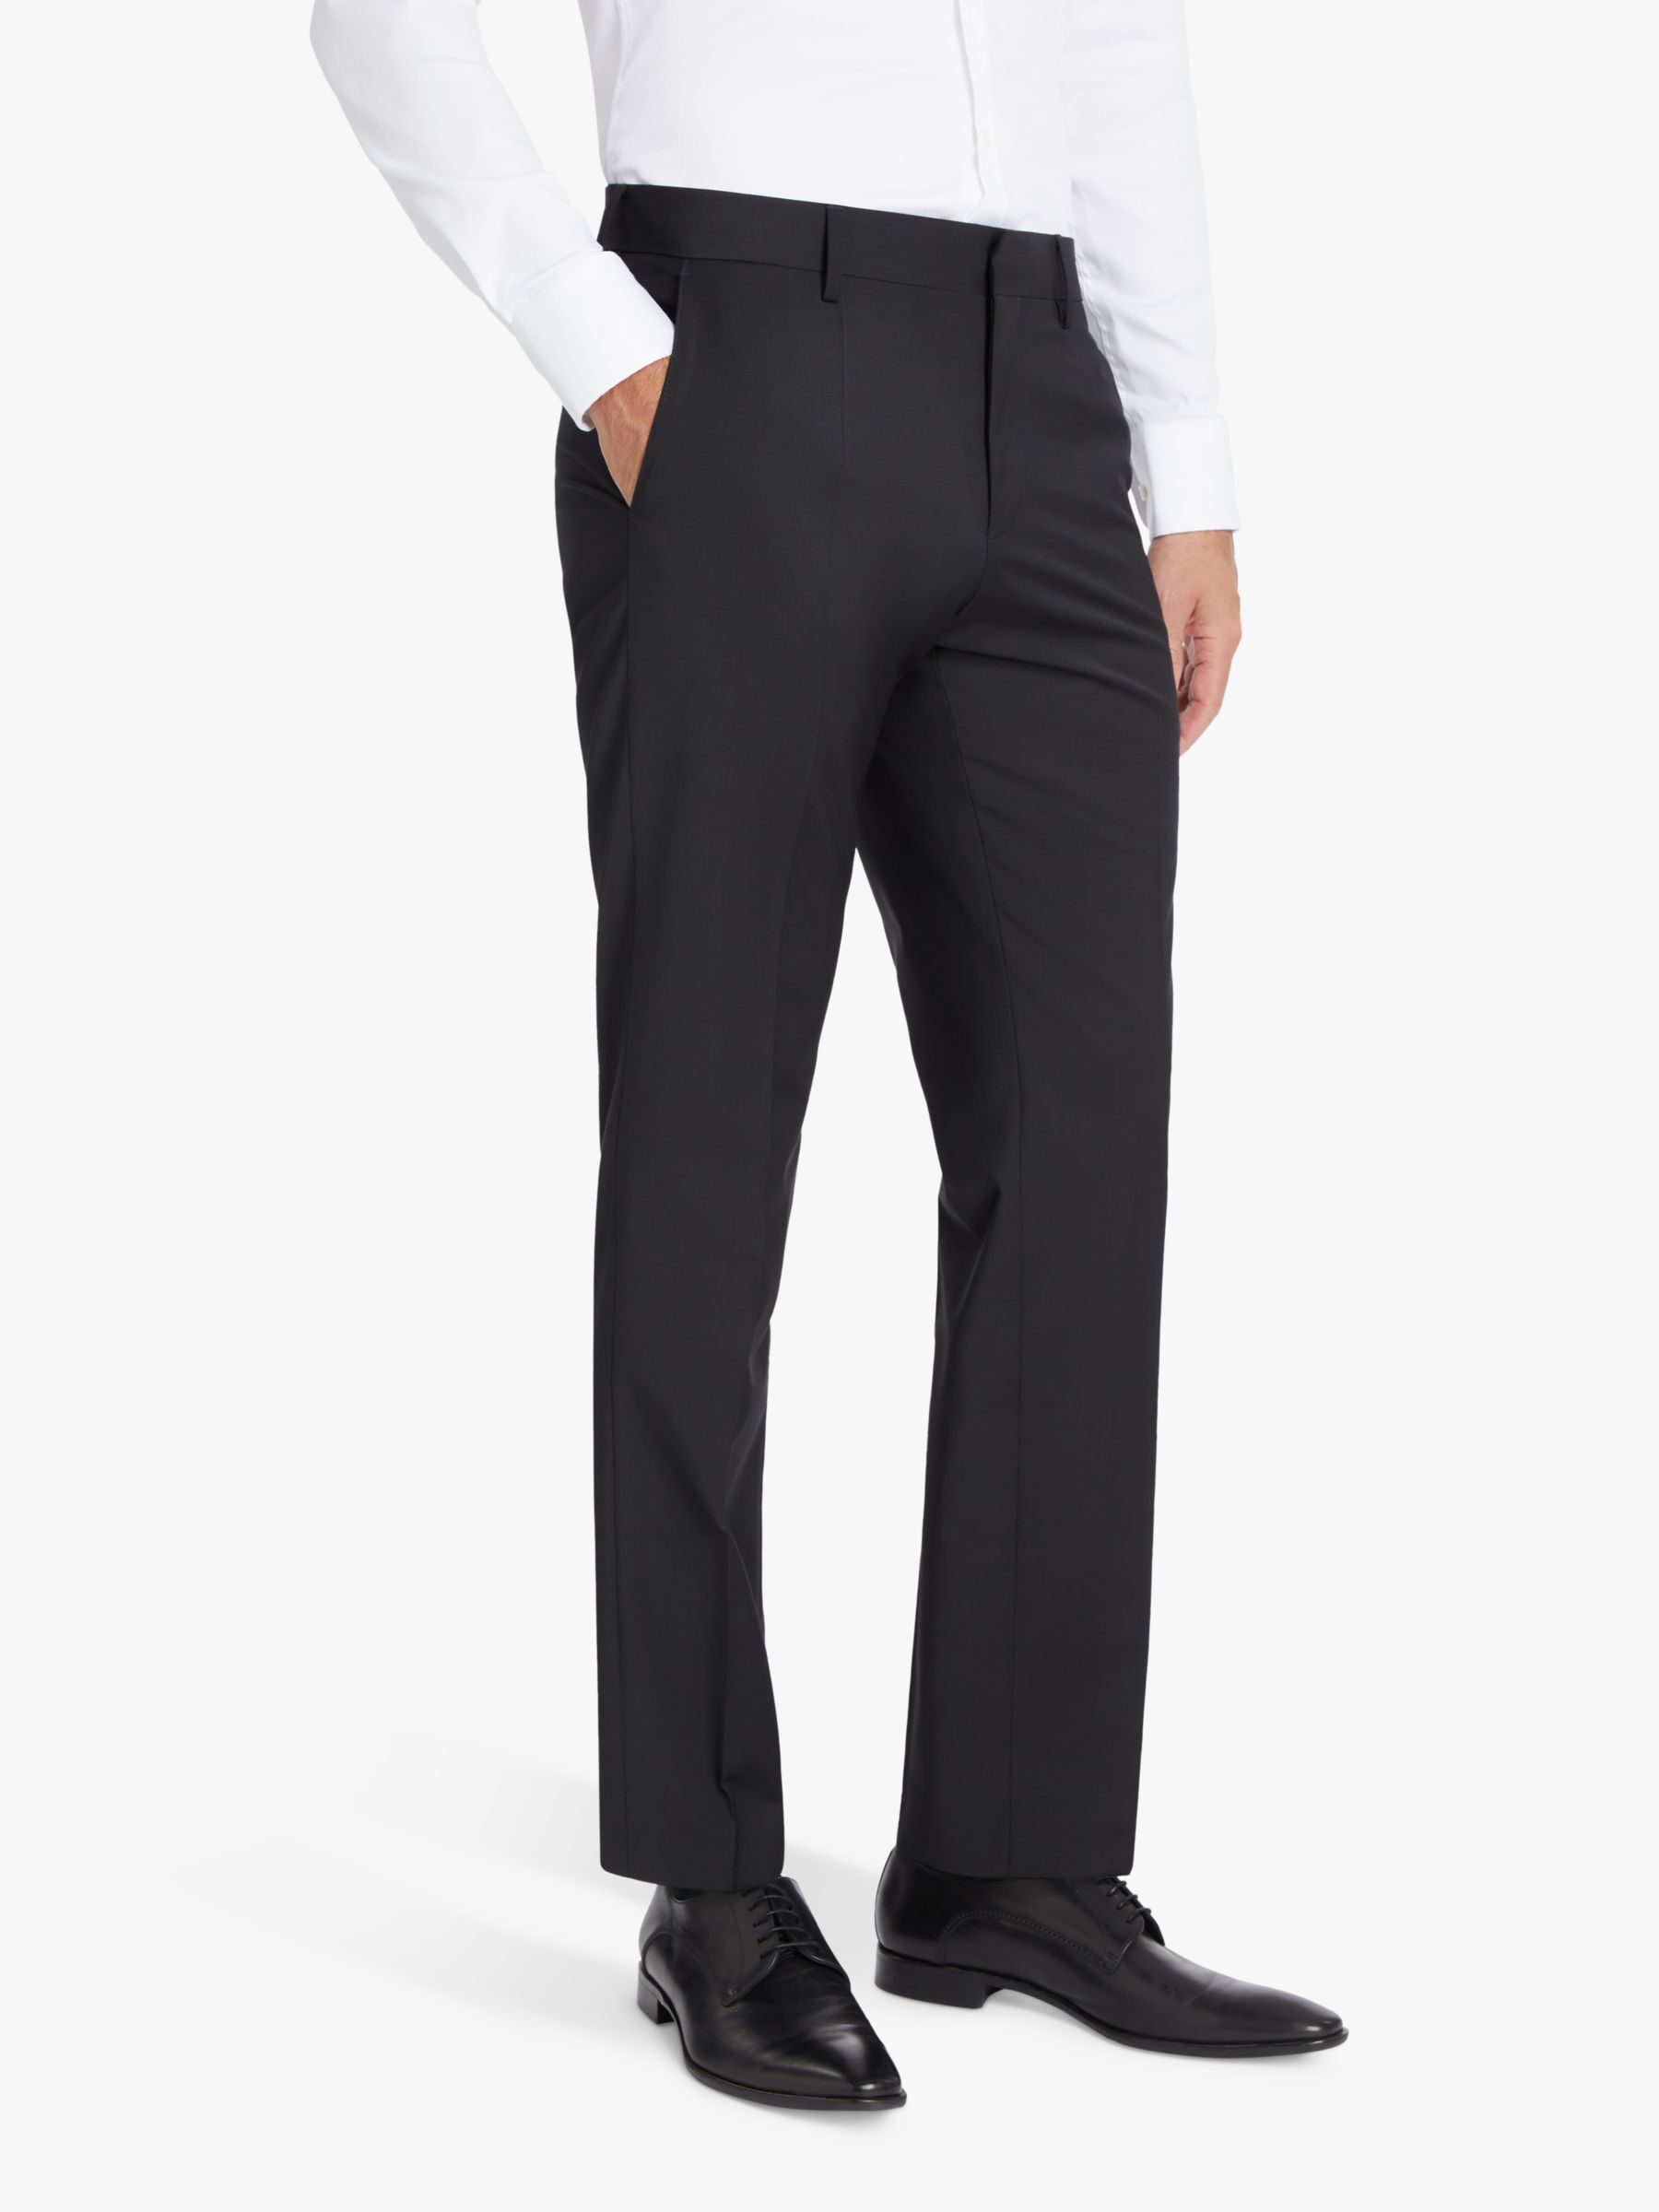 Костюмные брюки узкого кроя из натуральной шерсти BOSS Genius, черные